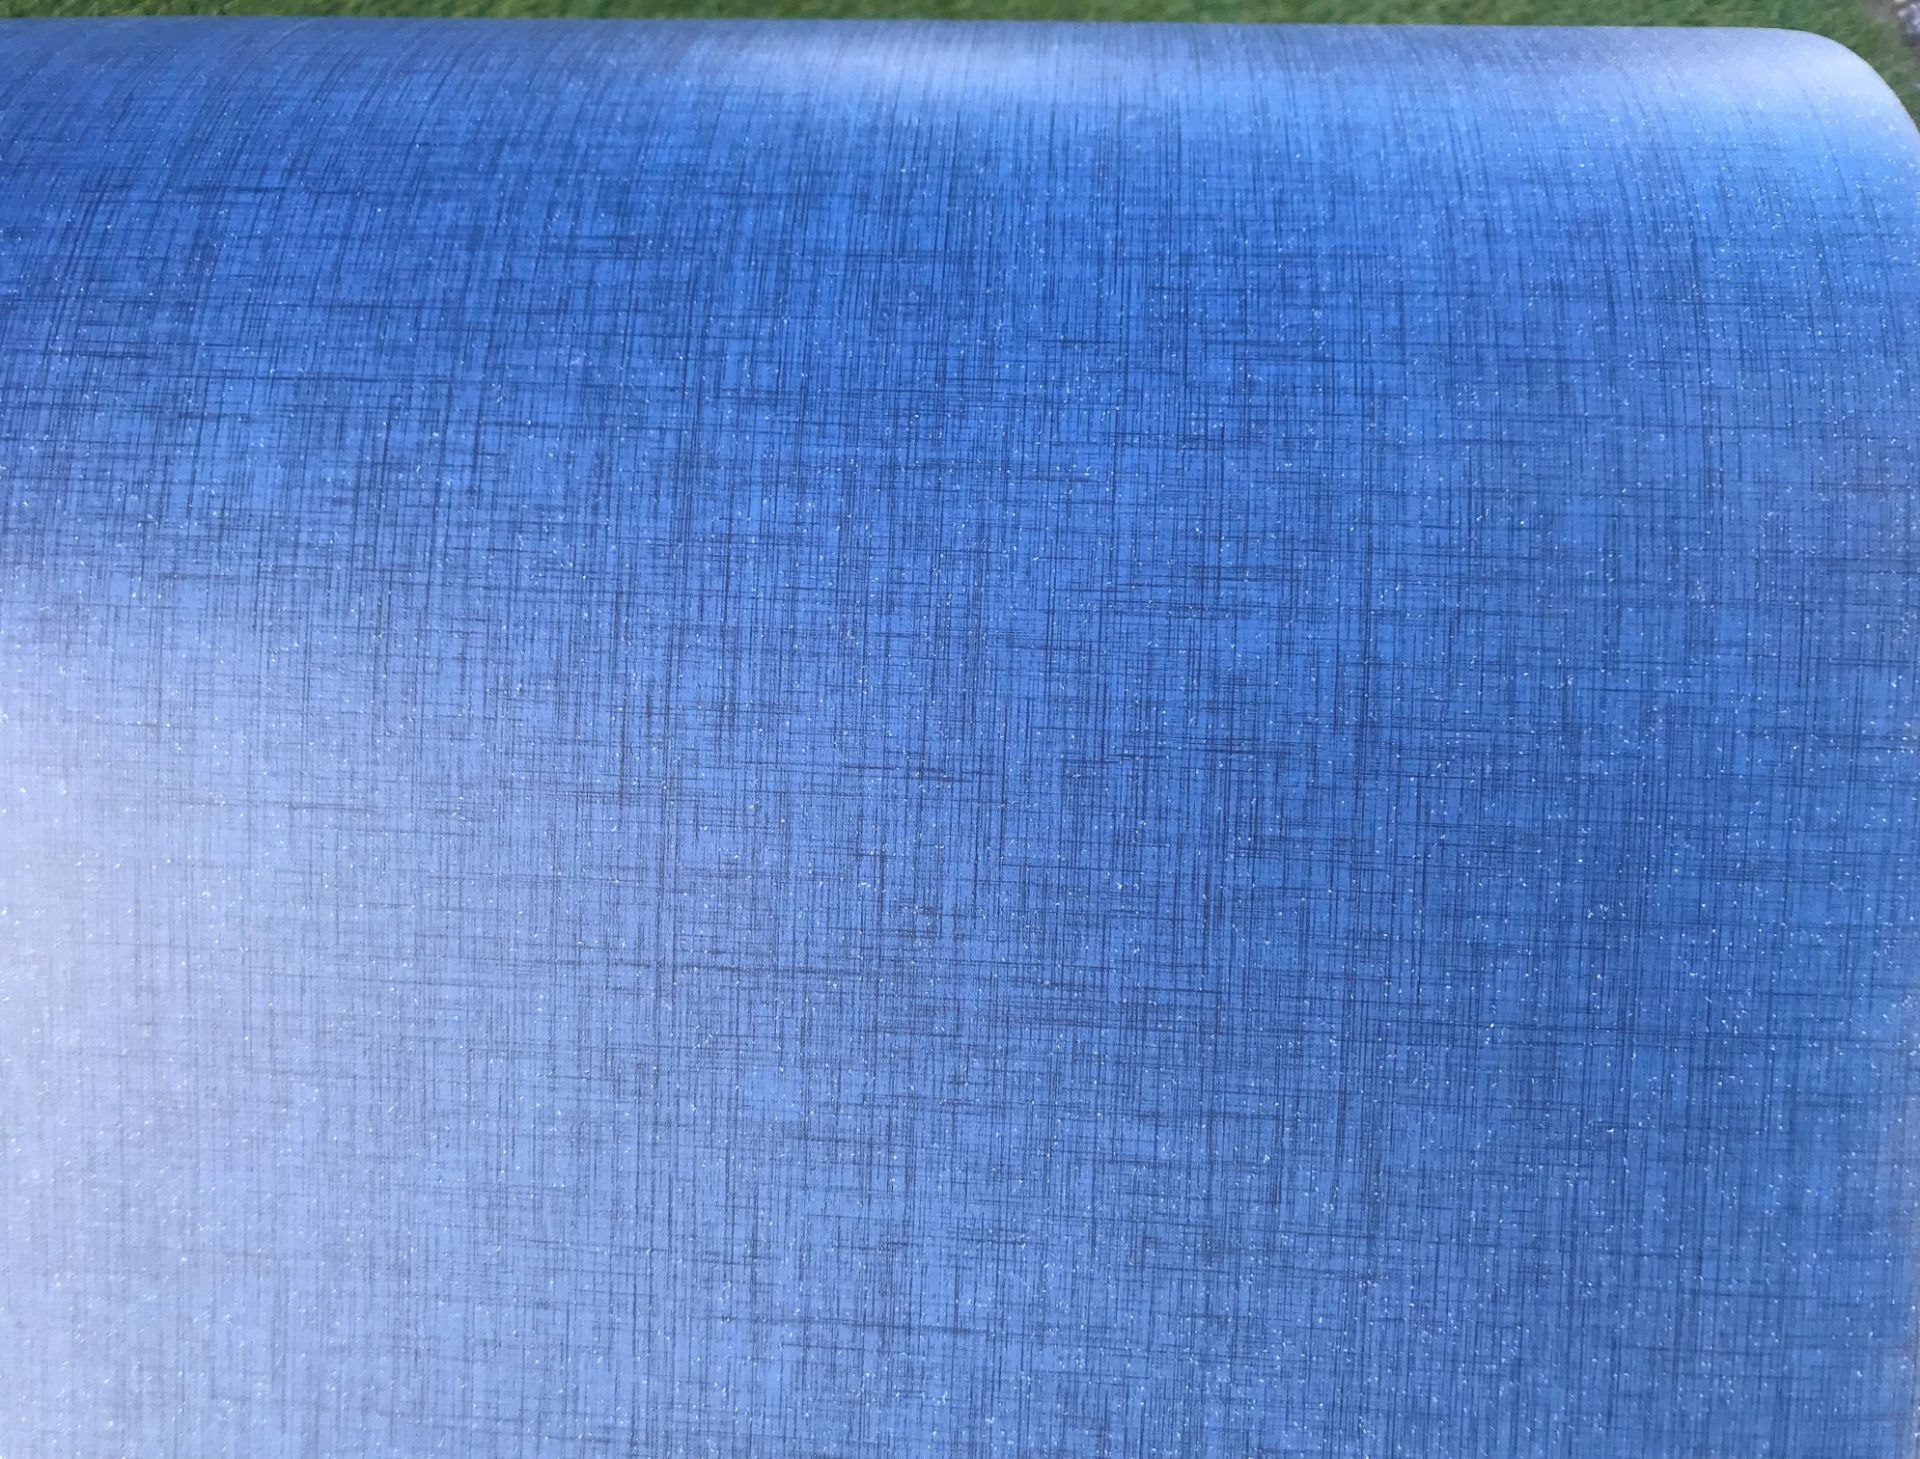 1 x GERFLOR Tarkett Commercial Grade Safety Flooring In Dark Blue -20X2M Roll - Ref: NWF004 - - Image 3 of 4